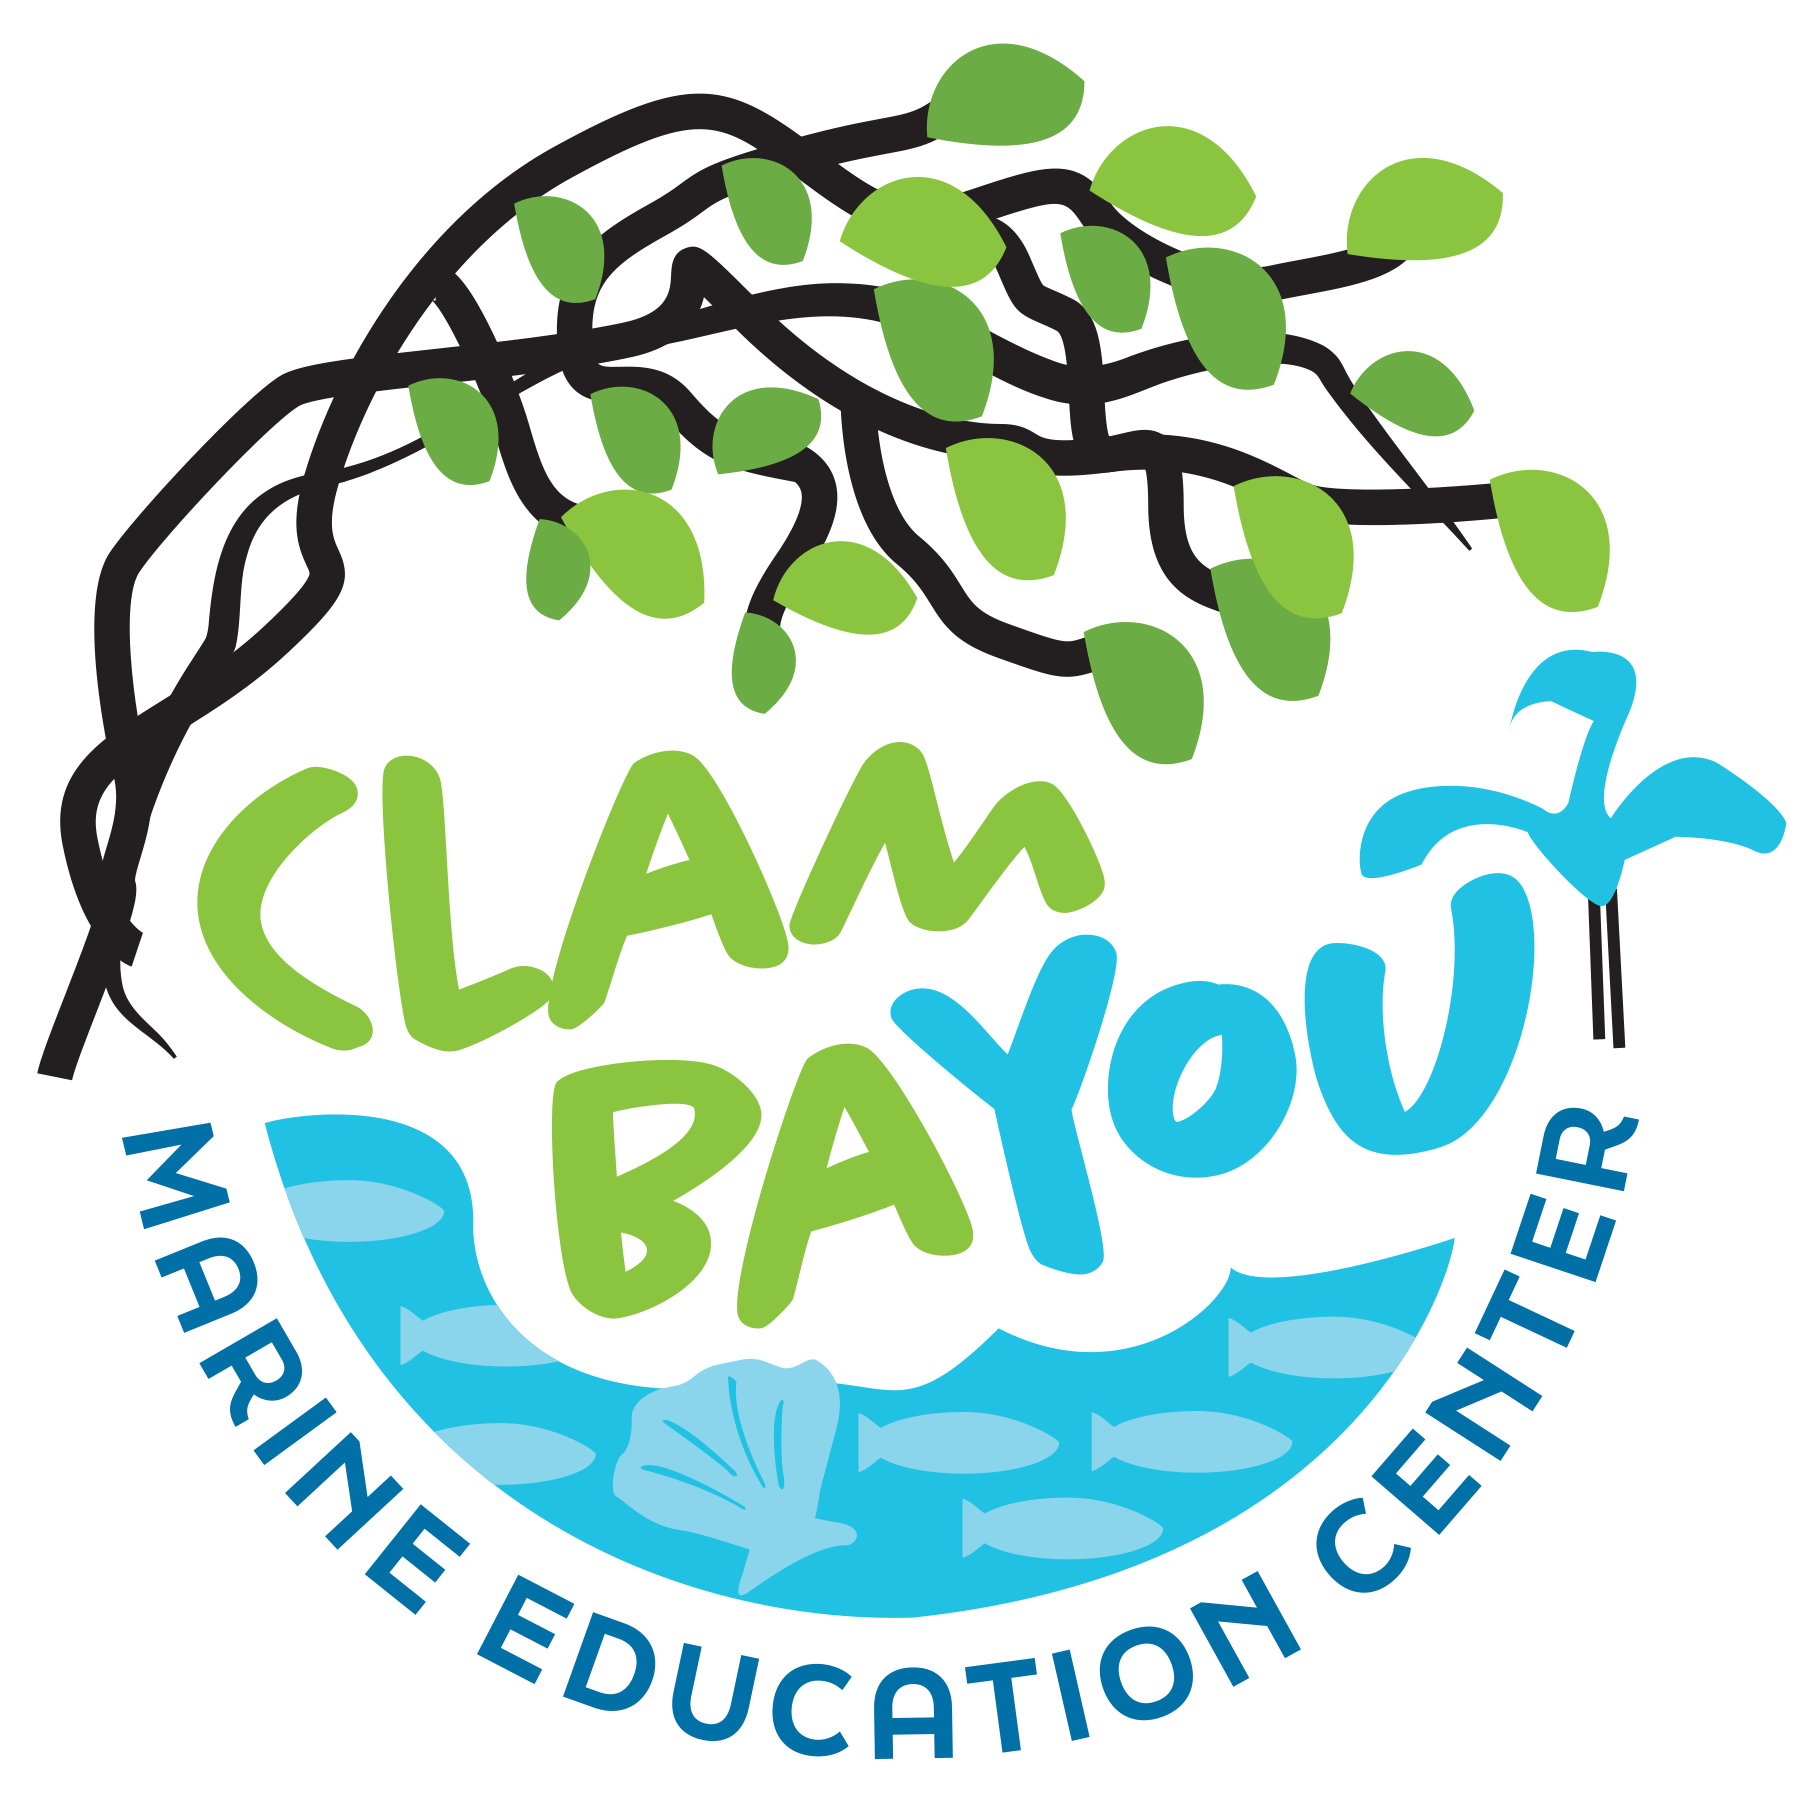 clam_bayou_logo_rgb